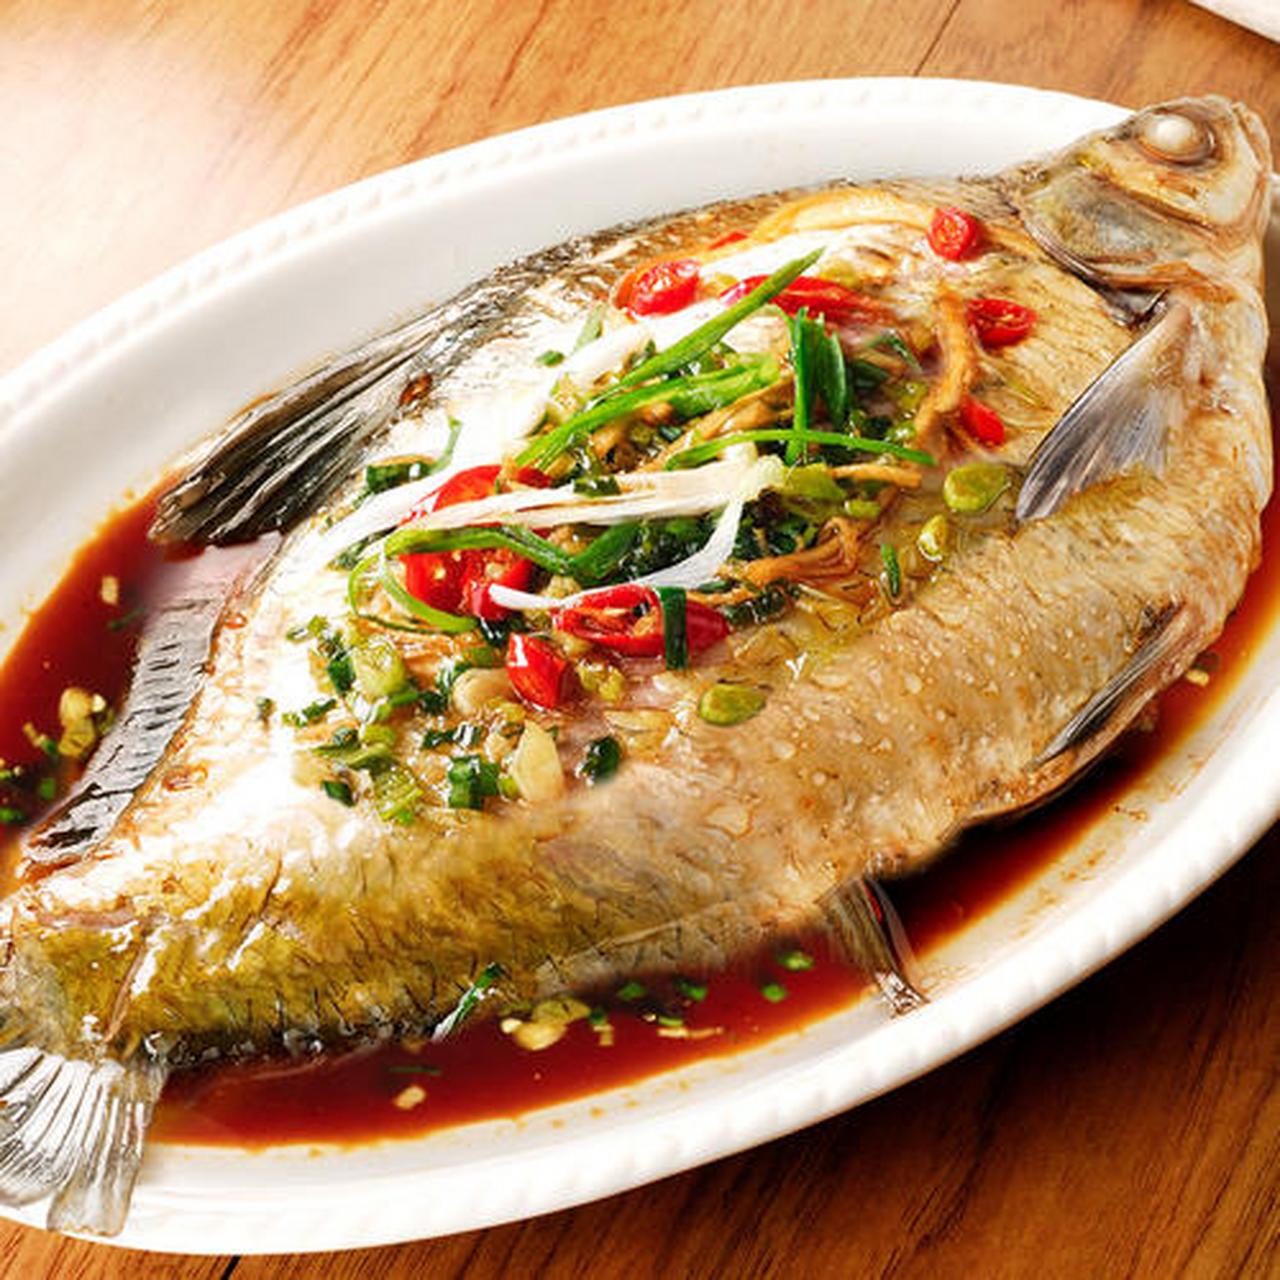 武昌鱼肉质肥嫩,味道鲜美,营养丰富,是武昌鱼的上品,故有樊口鳊鱼